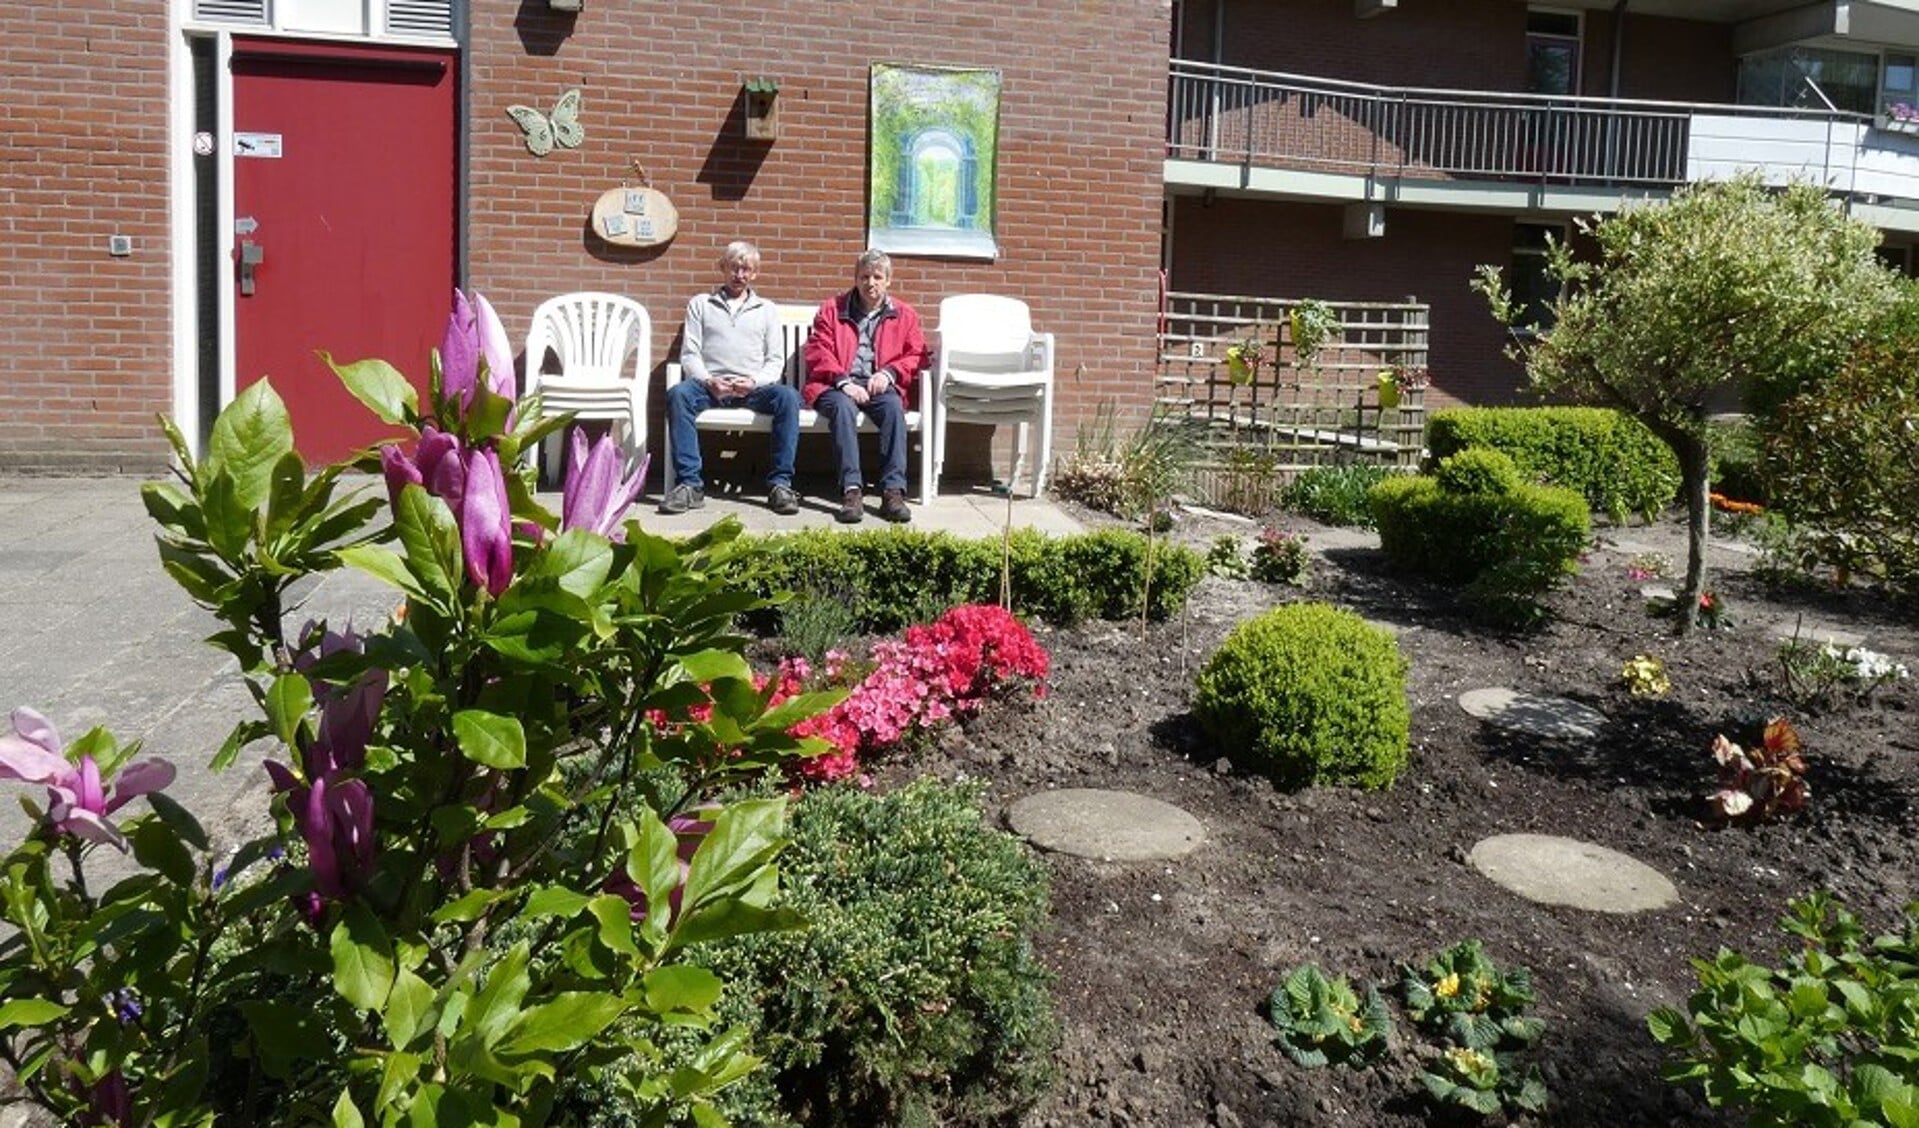 Het is goede uitrusten na gedane arbeid. Lan van der Meer (links) en Martien van Harteveld kijken met trots naar het resultaat van hun arbeid. (Foto Elly Bavelaar)